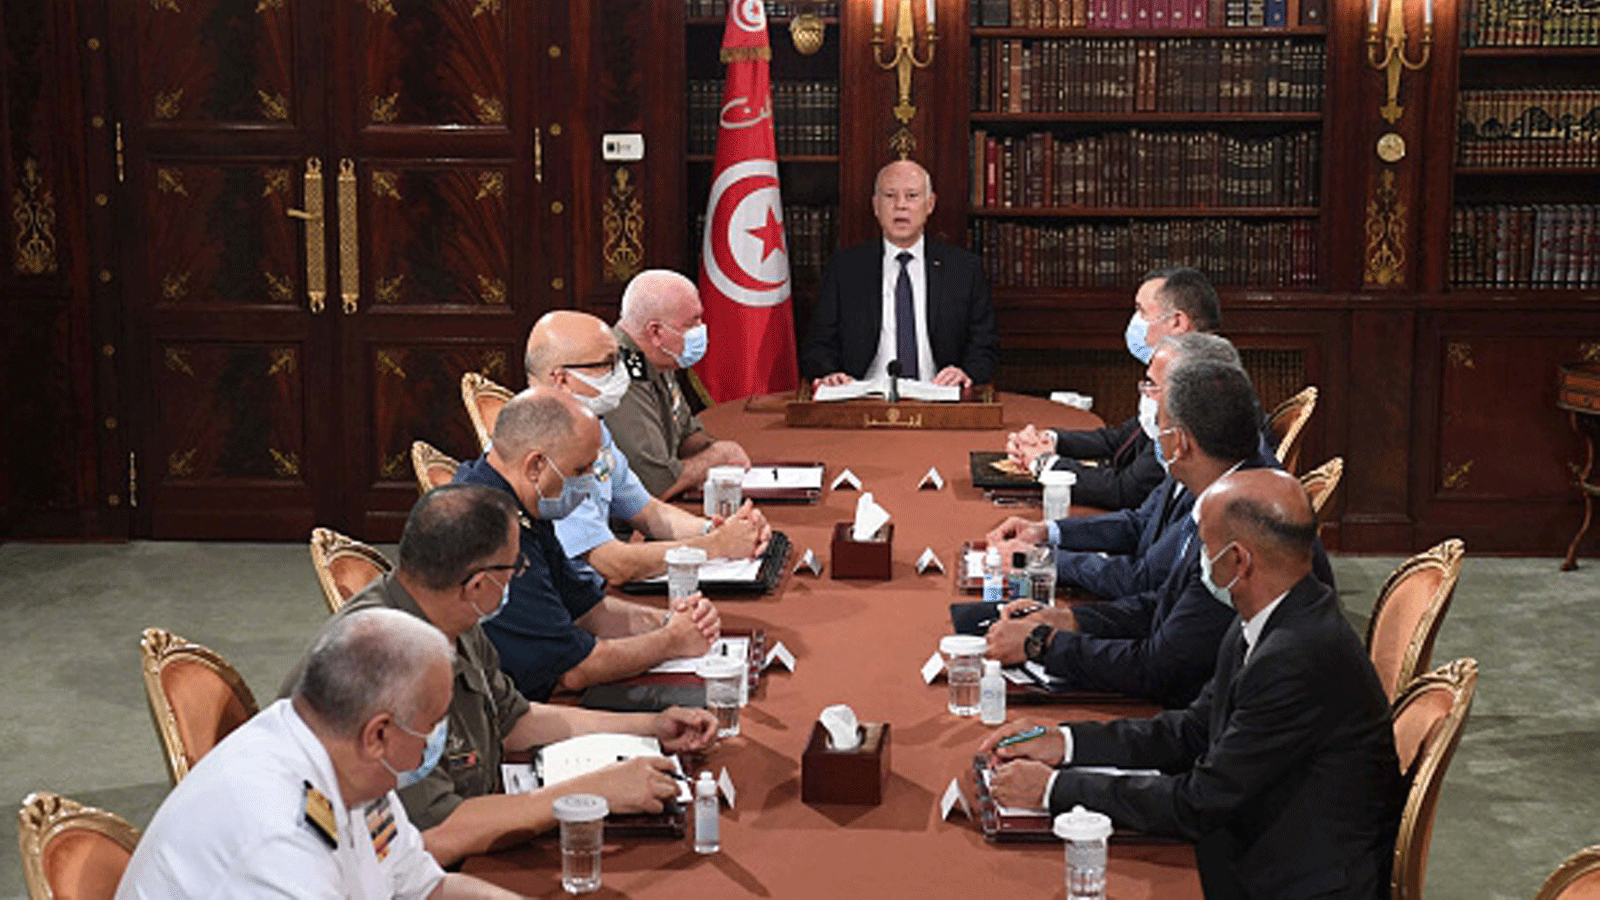 الرئيس التونسي قيس سعيد يُعلِن توليه السلطة التنفيذية بالإضافة إلى تعليق عمل البرلمان بقصر قرطاج في تونس العاصمة بتاريخ 25 تموز/ يوليو 2021